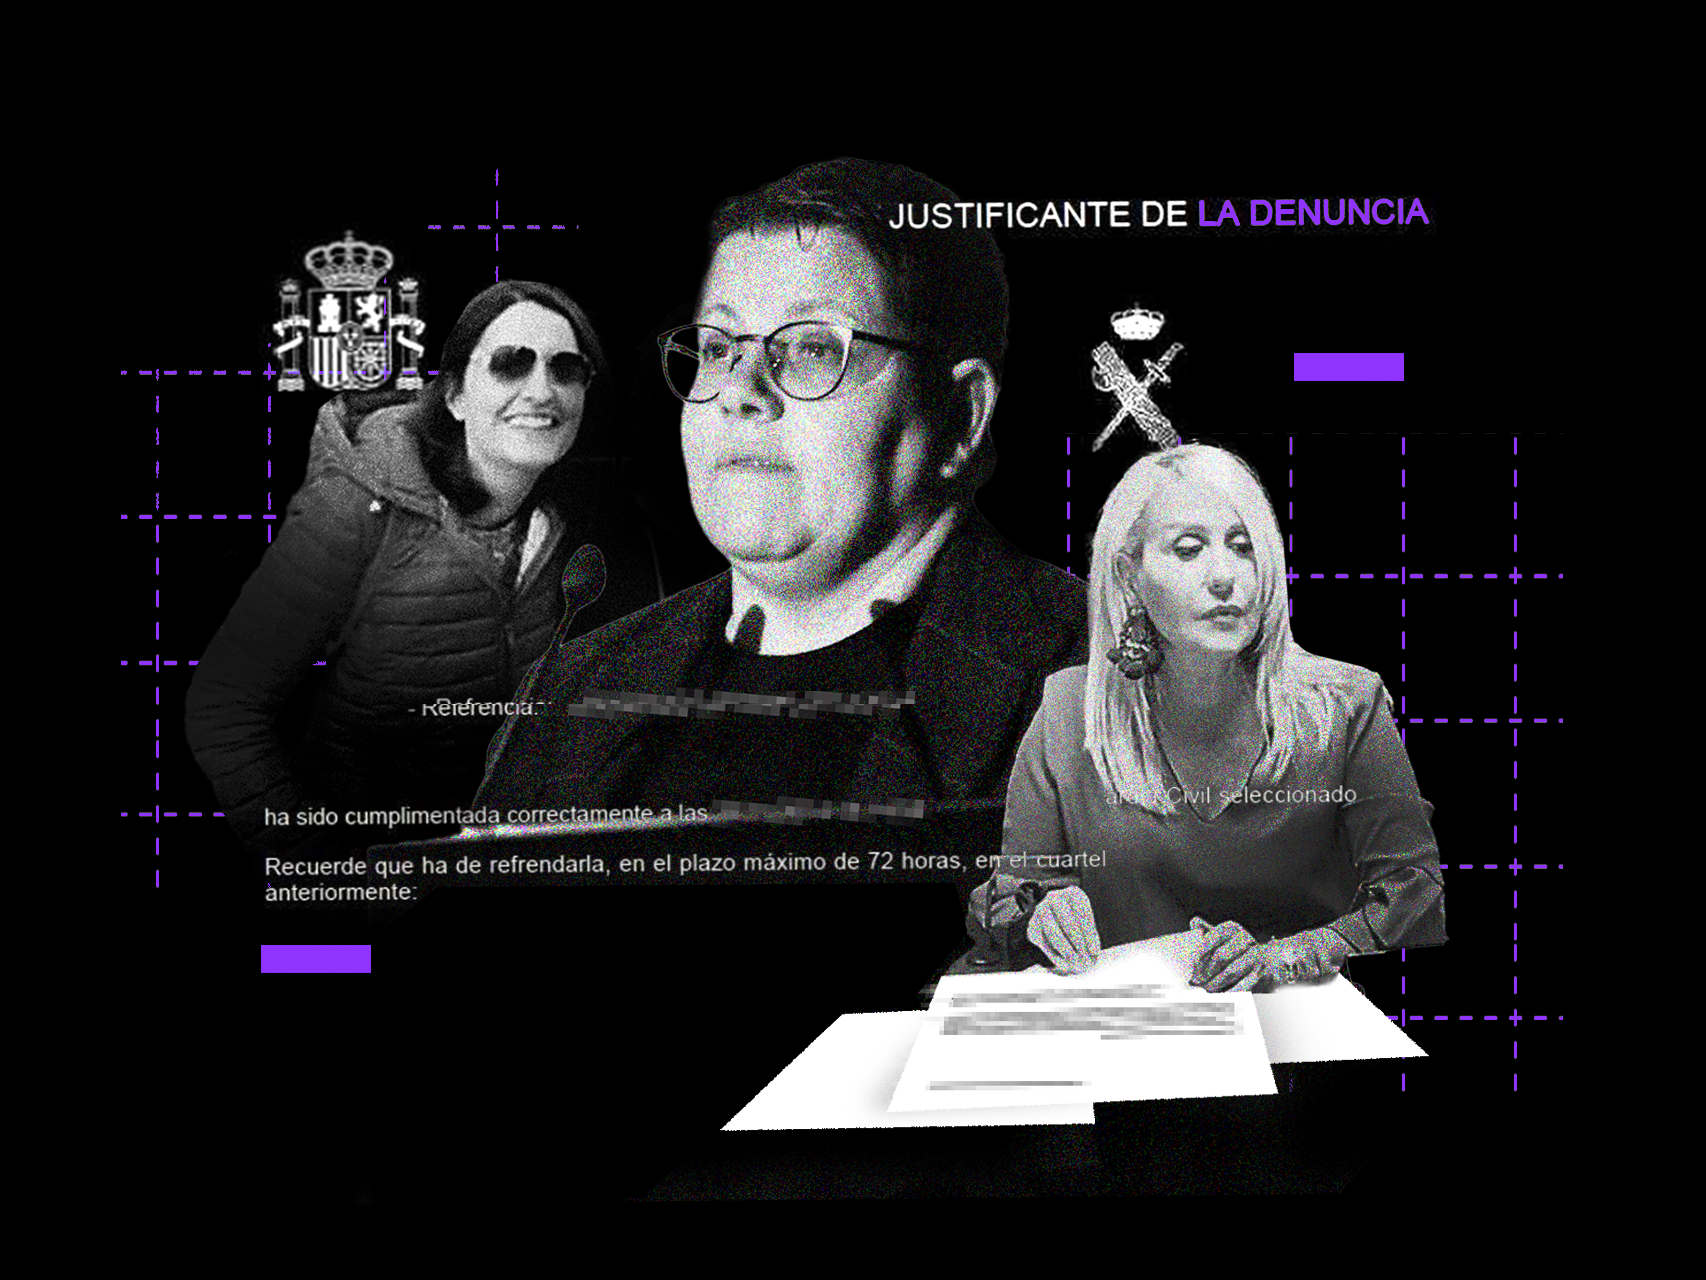 María Tato denuncia a Isabel García, directora del Instituto de las Mujeres, y a su pareja Elisabeth García Busnadiego por usurpar la identidad de su empresa.